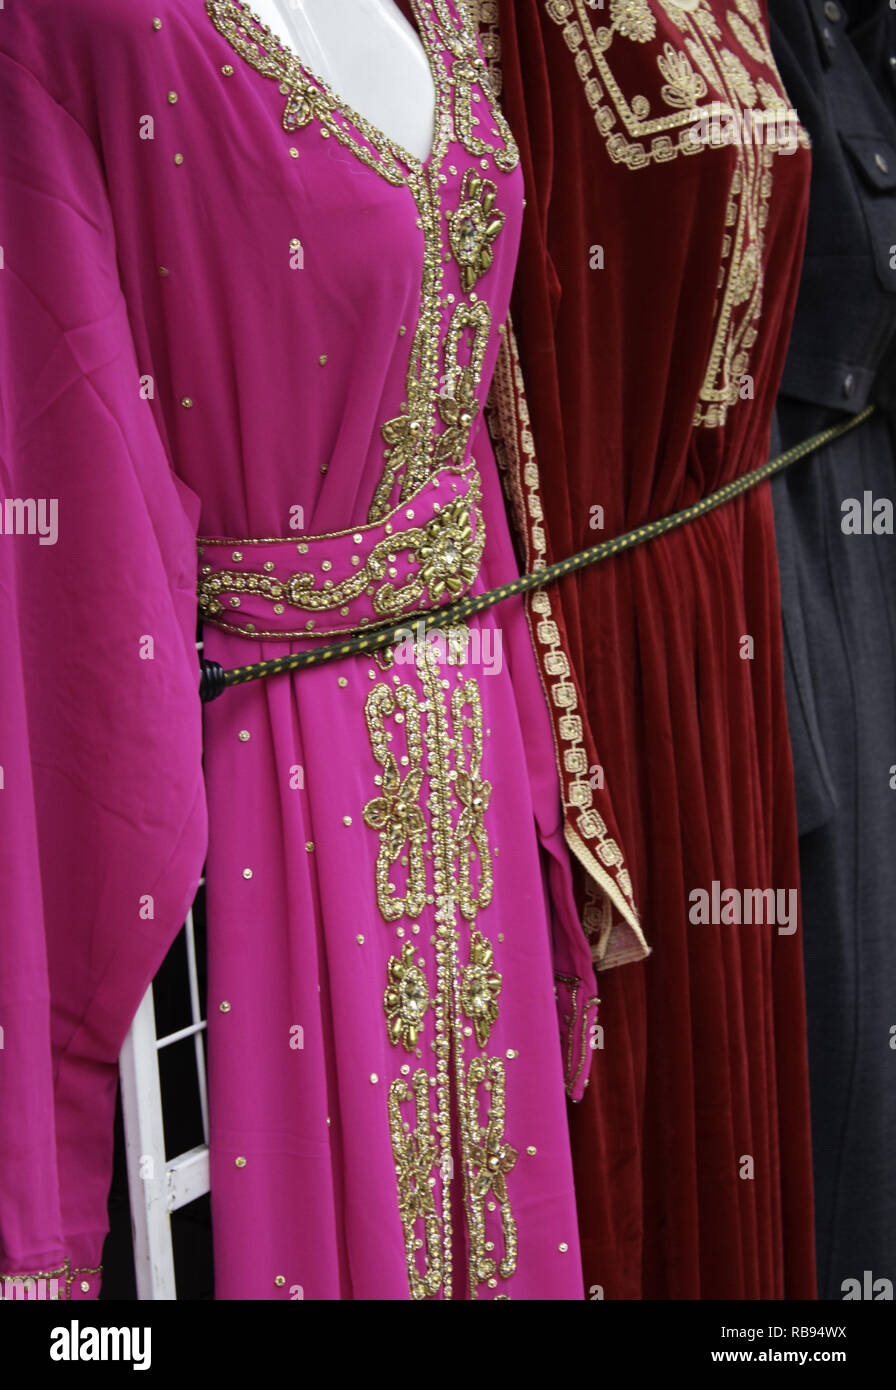 Robes femme arabe en magasin, tissus typiques Banque D'Images